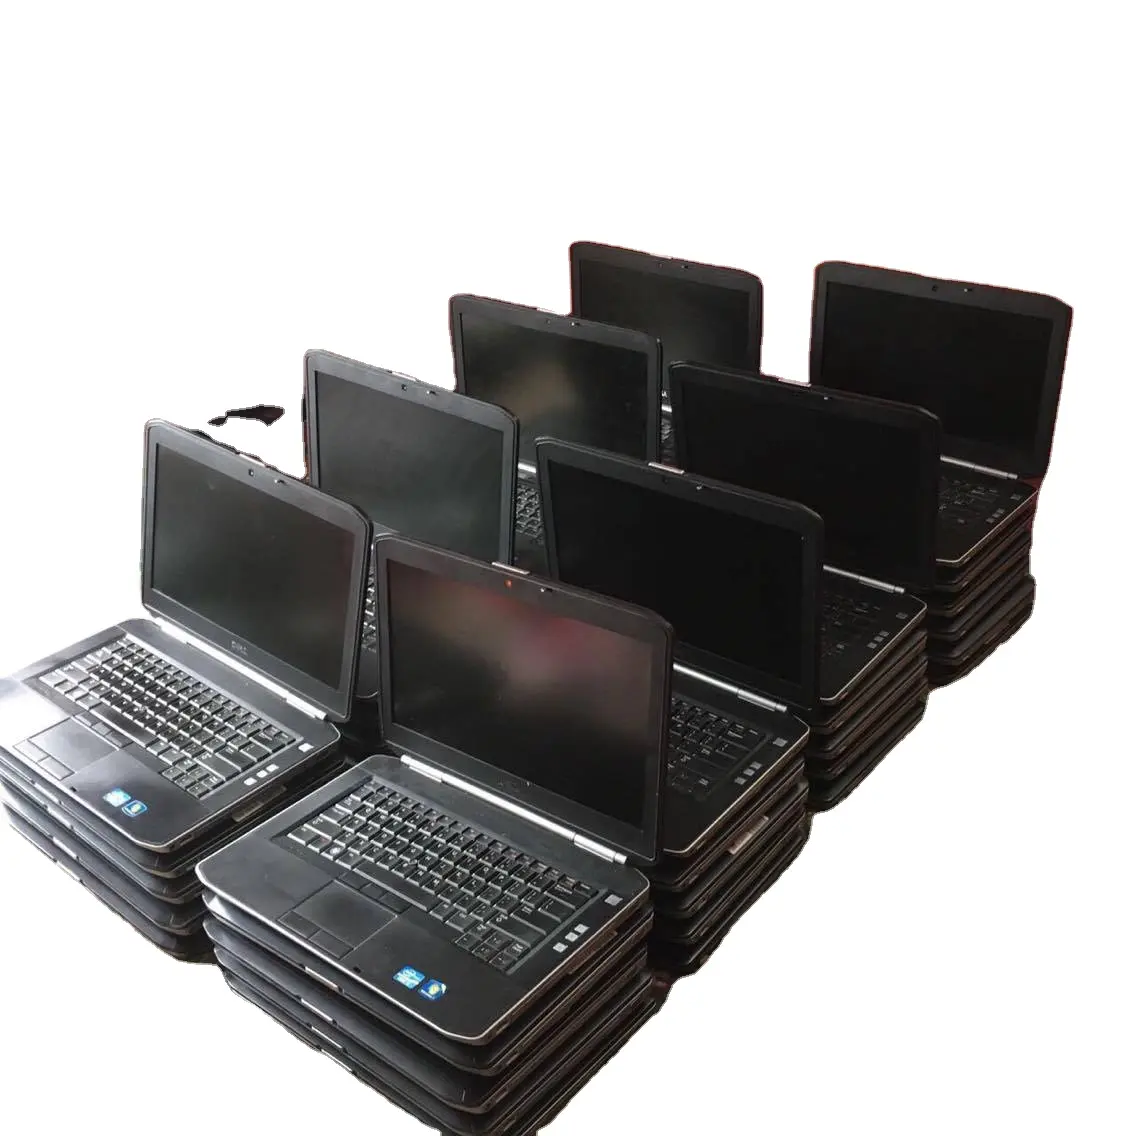 Toptan yenilenmiş ikinci el dizüstü bilgisayarlar masaüstü bilgisayar kullanılan elektronik masaüstü bilgisayar kullanılan dizüstü bilgisayarlar dizüstü bilgisayarlar için öğrenciler